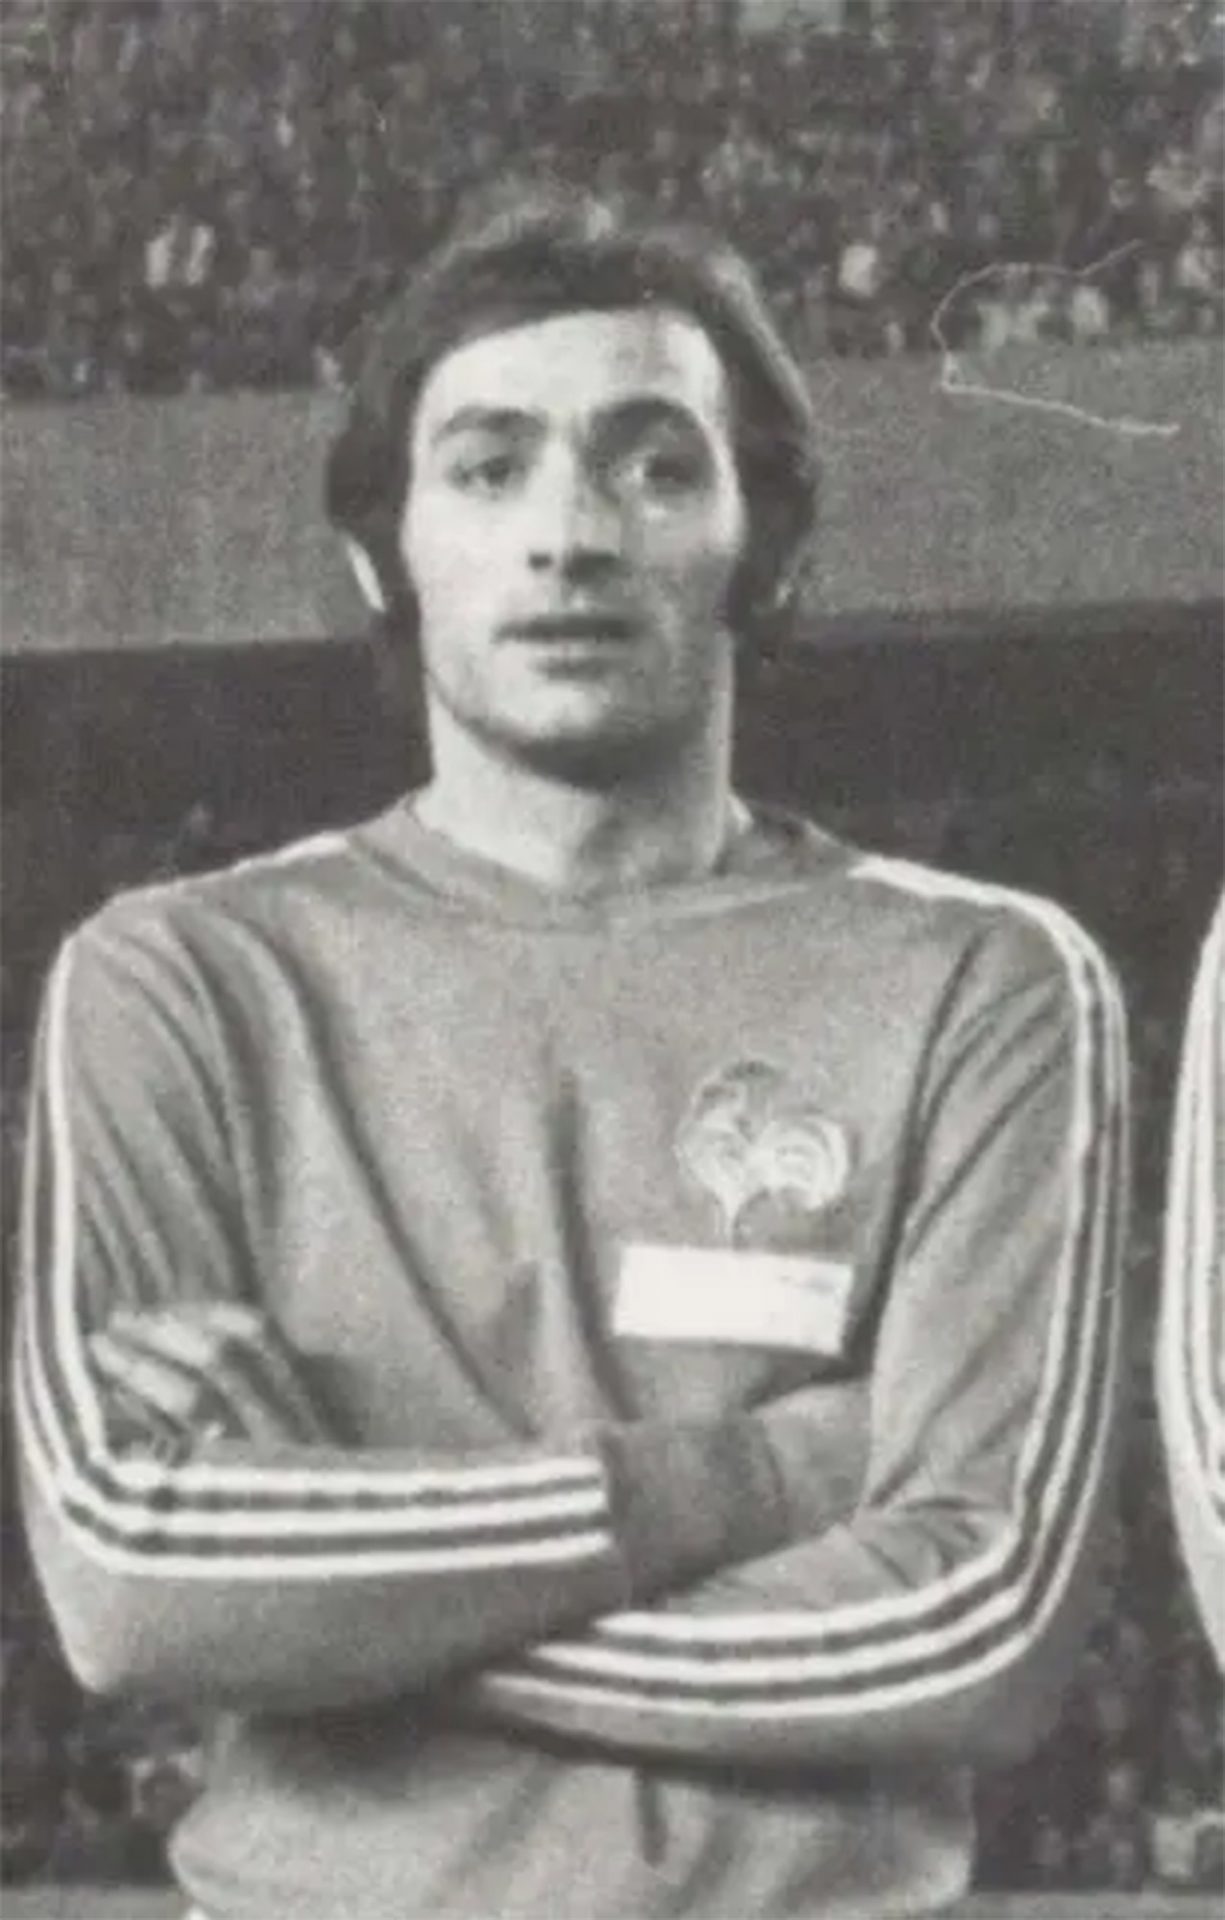 Albert Vanucci